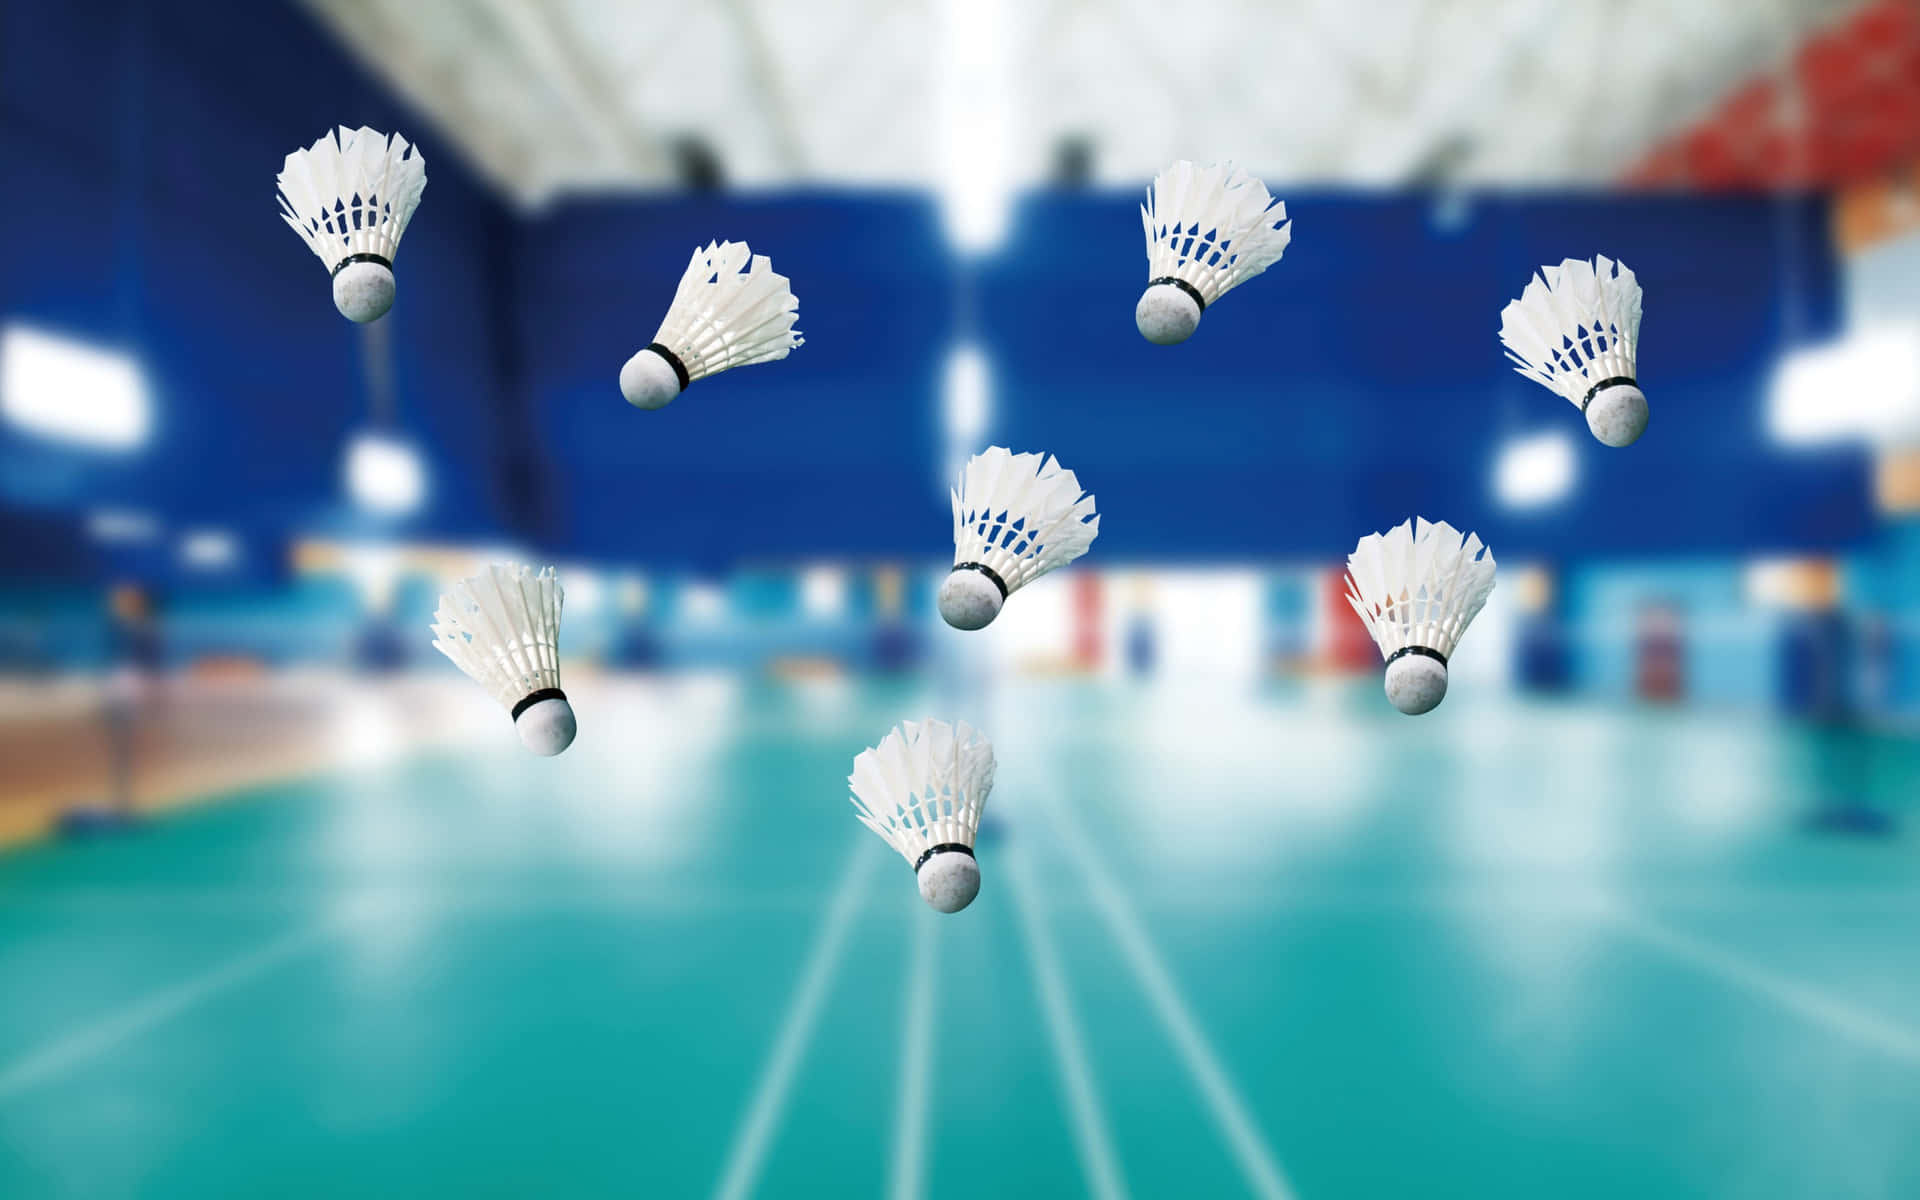 Imagemde Badminton Com Dimensões De 2880 X 1800 Pixels.